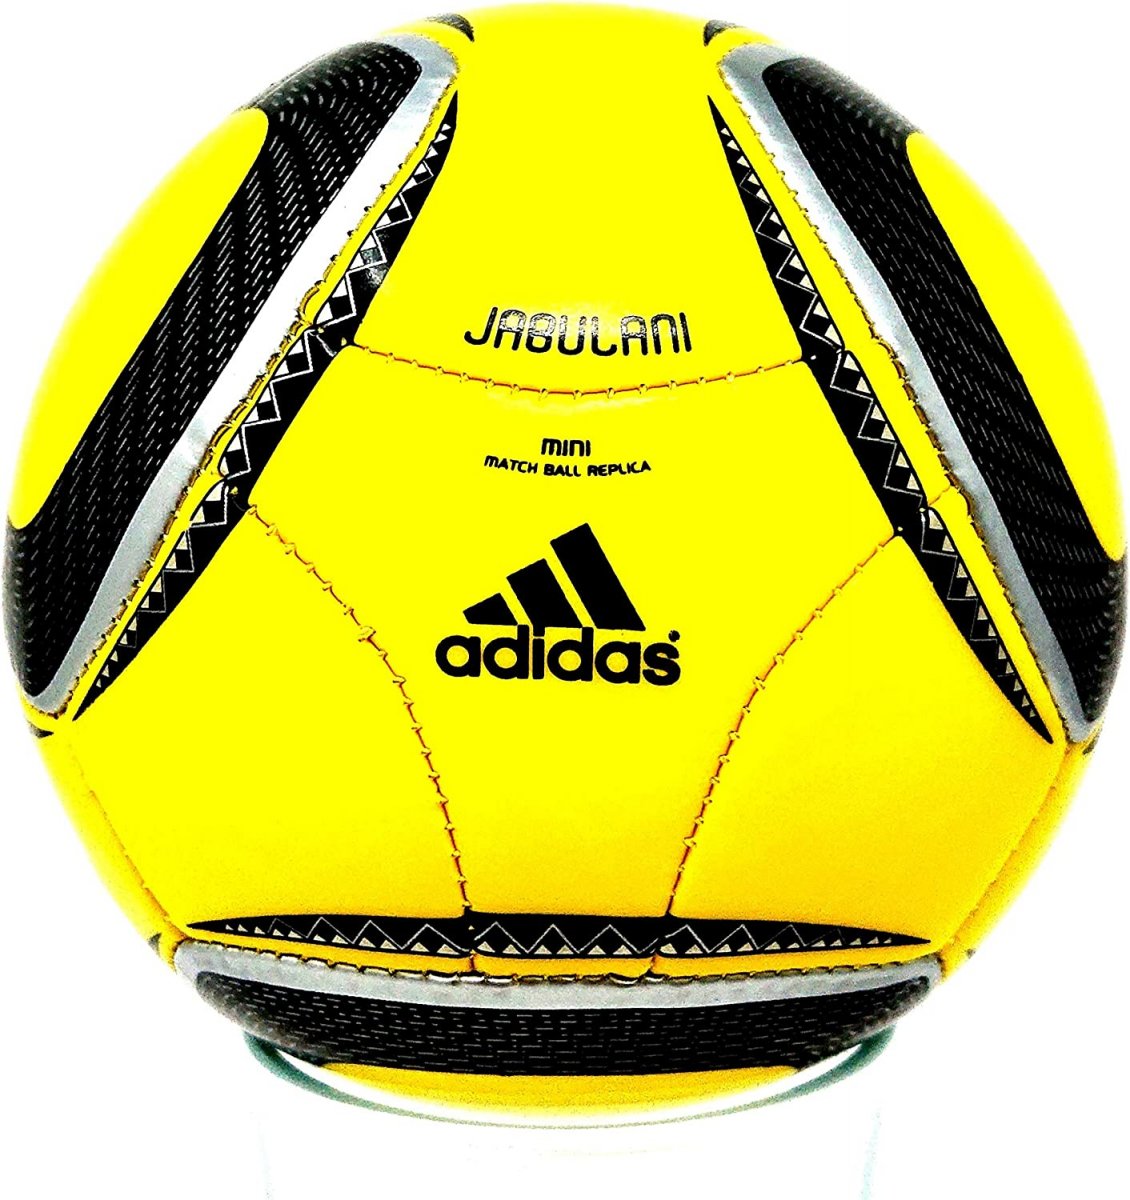 Мяч Джабулани ЧМ 2010